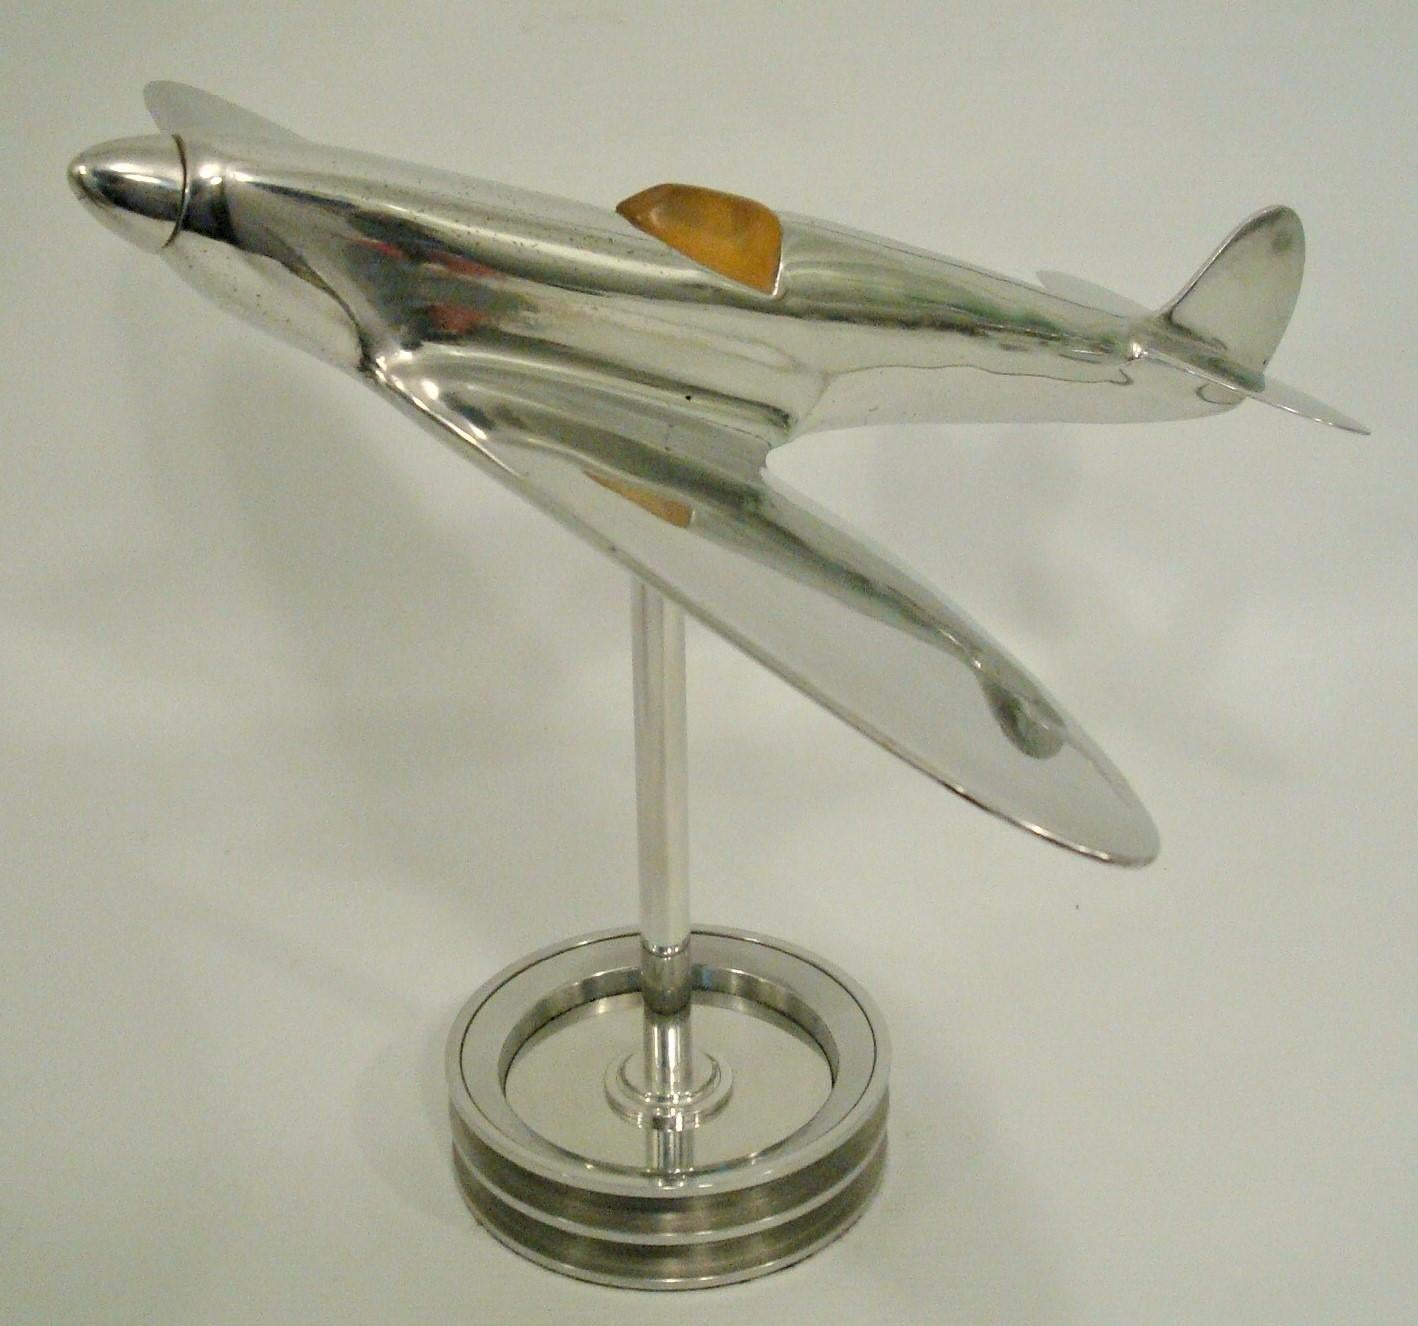 Supermarine Spitfire Flugzeug Modell, Schreibtisch / Theken / Skulptur.
Hergestellt im Vereinigten Königreich in den 1930er Jahren. Das perfekte Geschenk für jeden Piloten oder Luftfahrtfan.

Die Supermarine Spitfire ist ein britisches